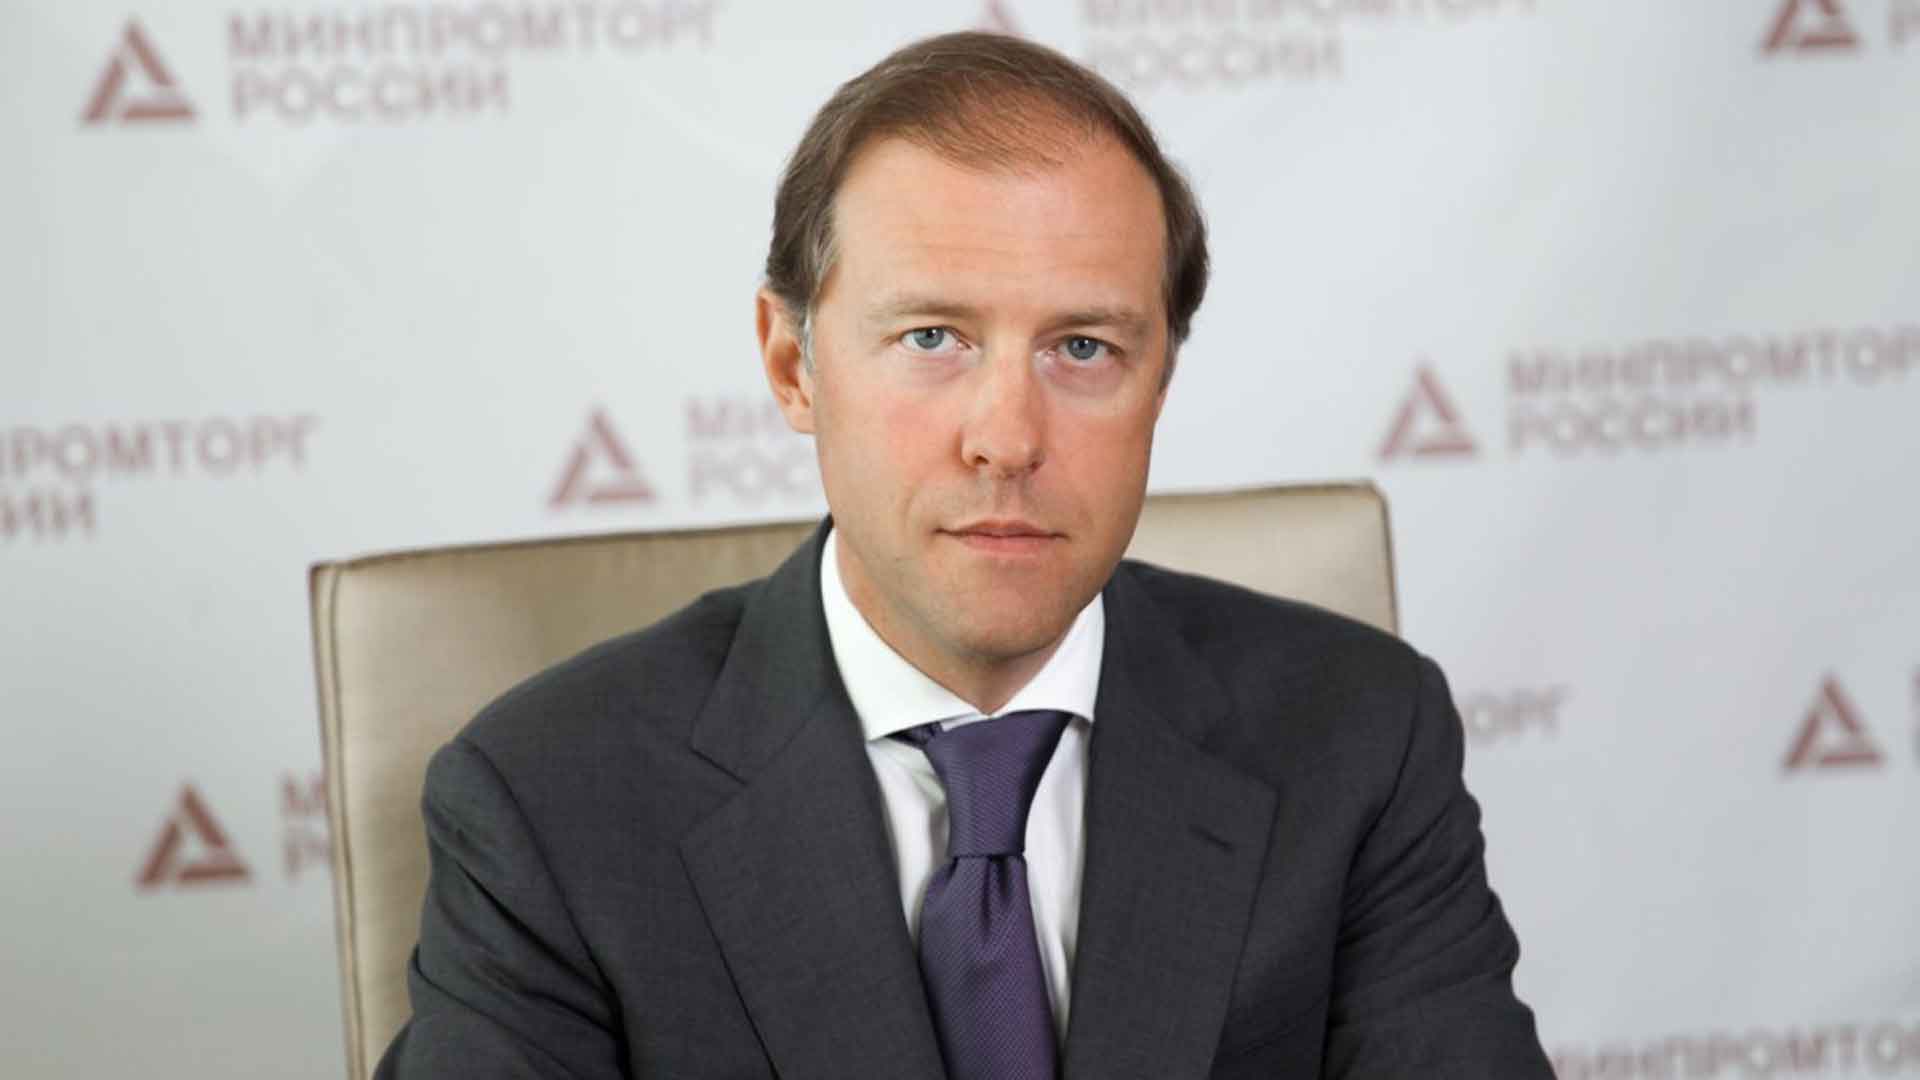 Министр промышленности российской федерации